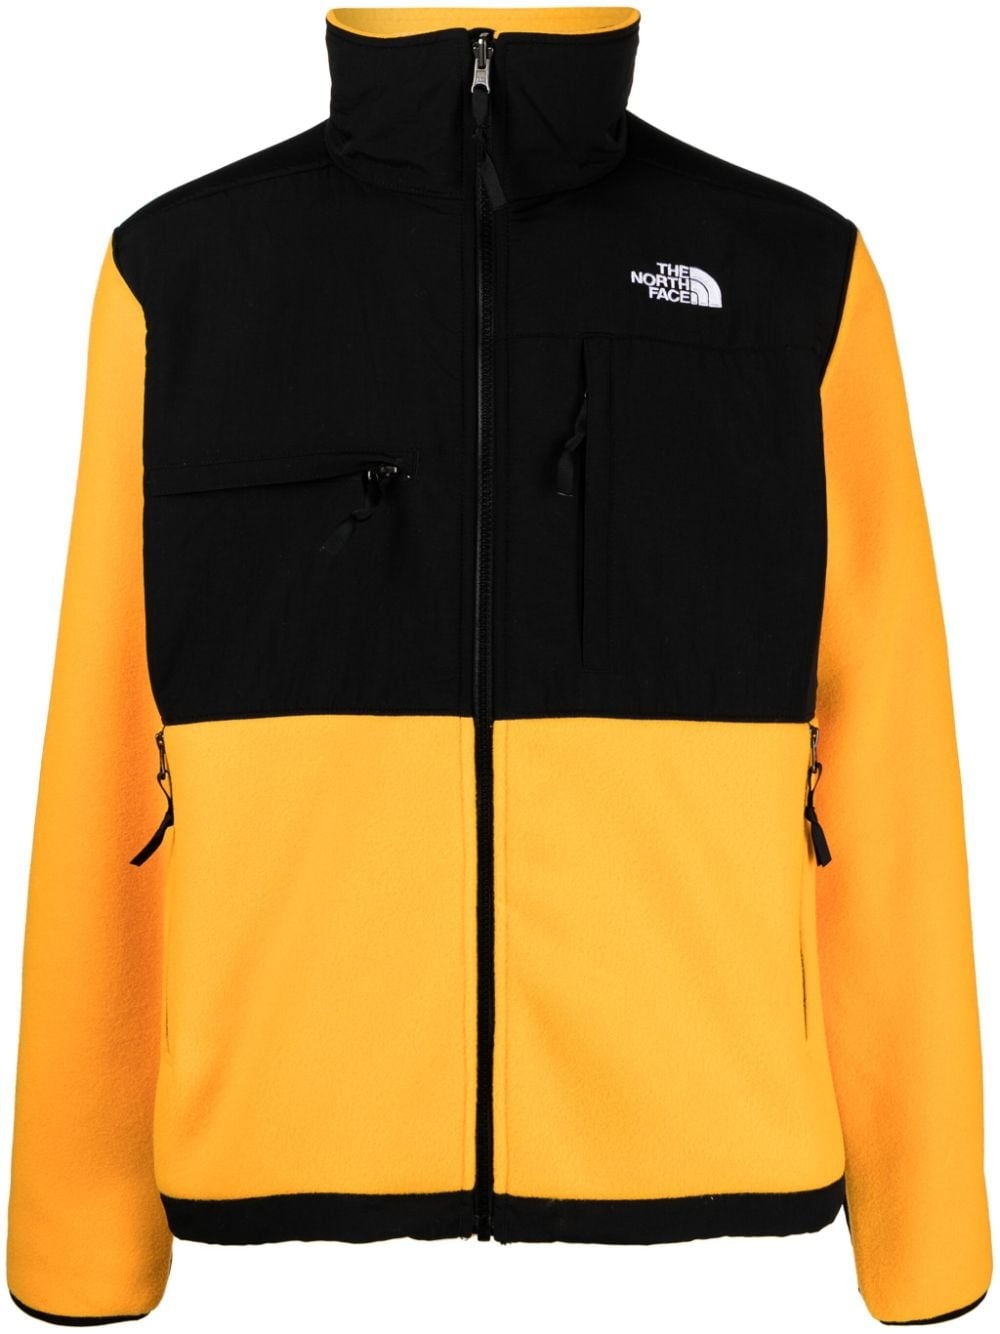 Denali two-tone jacket - 1